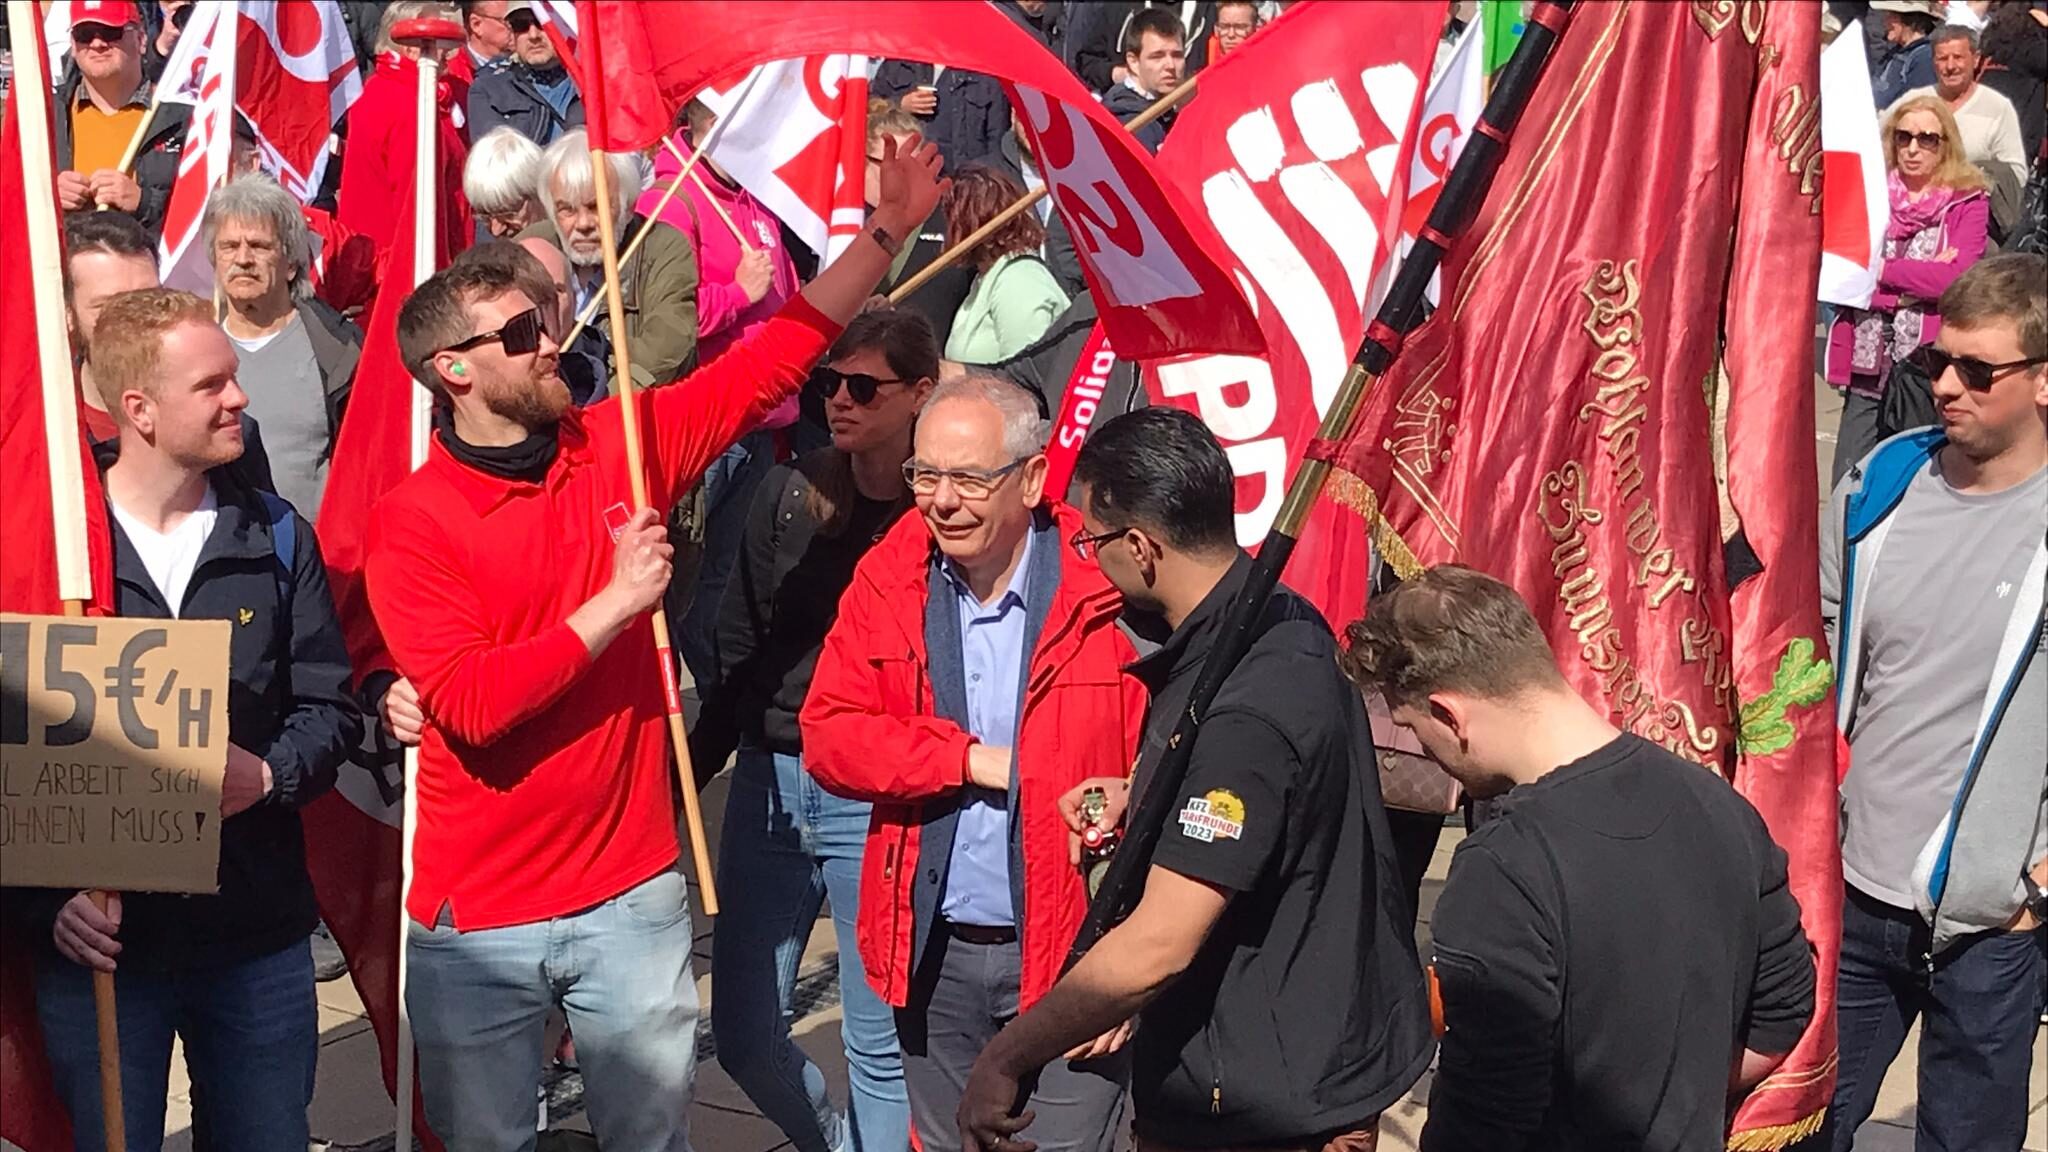 Junge Gewerkschafter demonstrieren mit roten Fahnen. In der Mitte ein älterer Mann in roter Jacke.